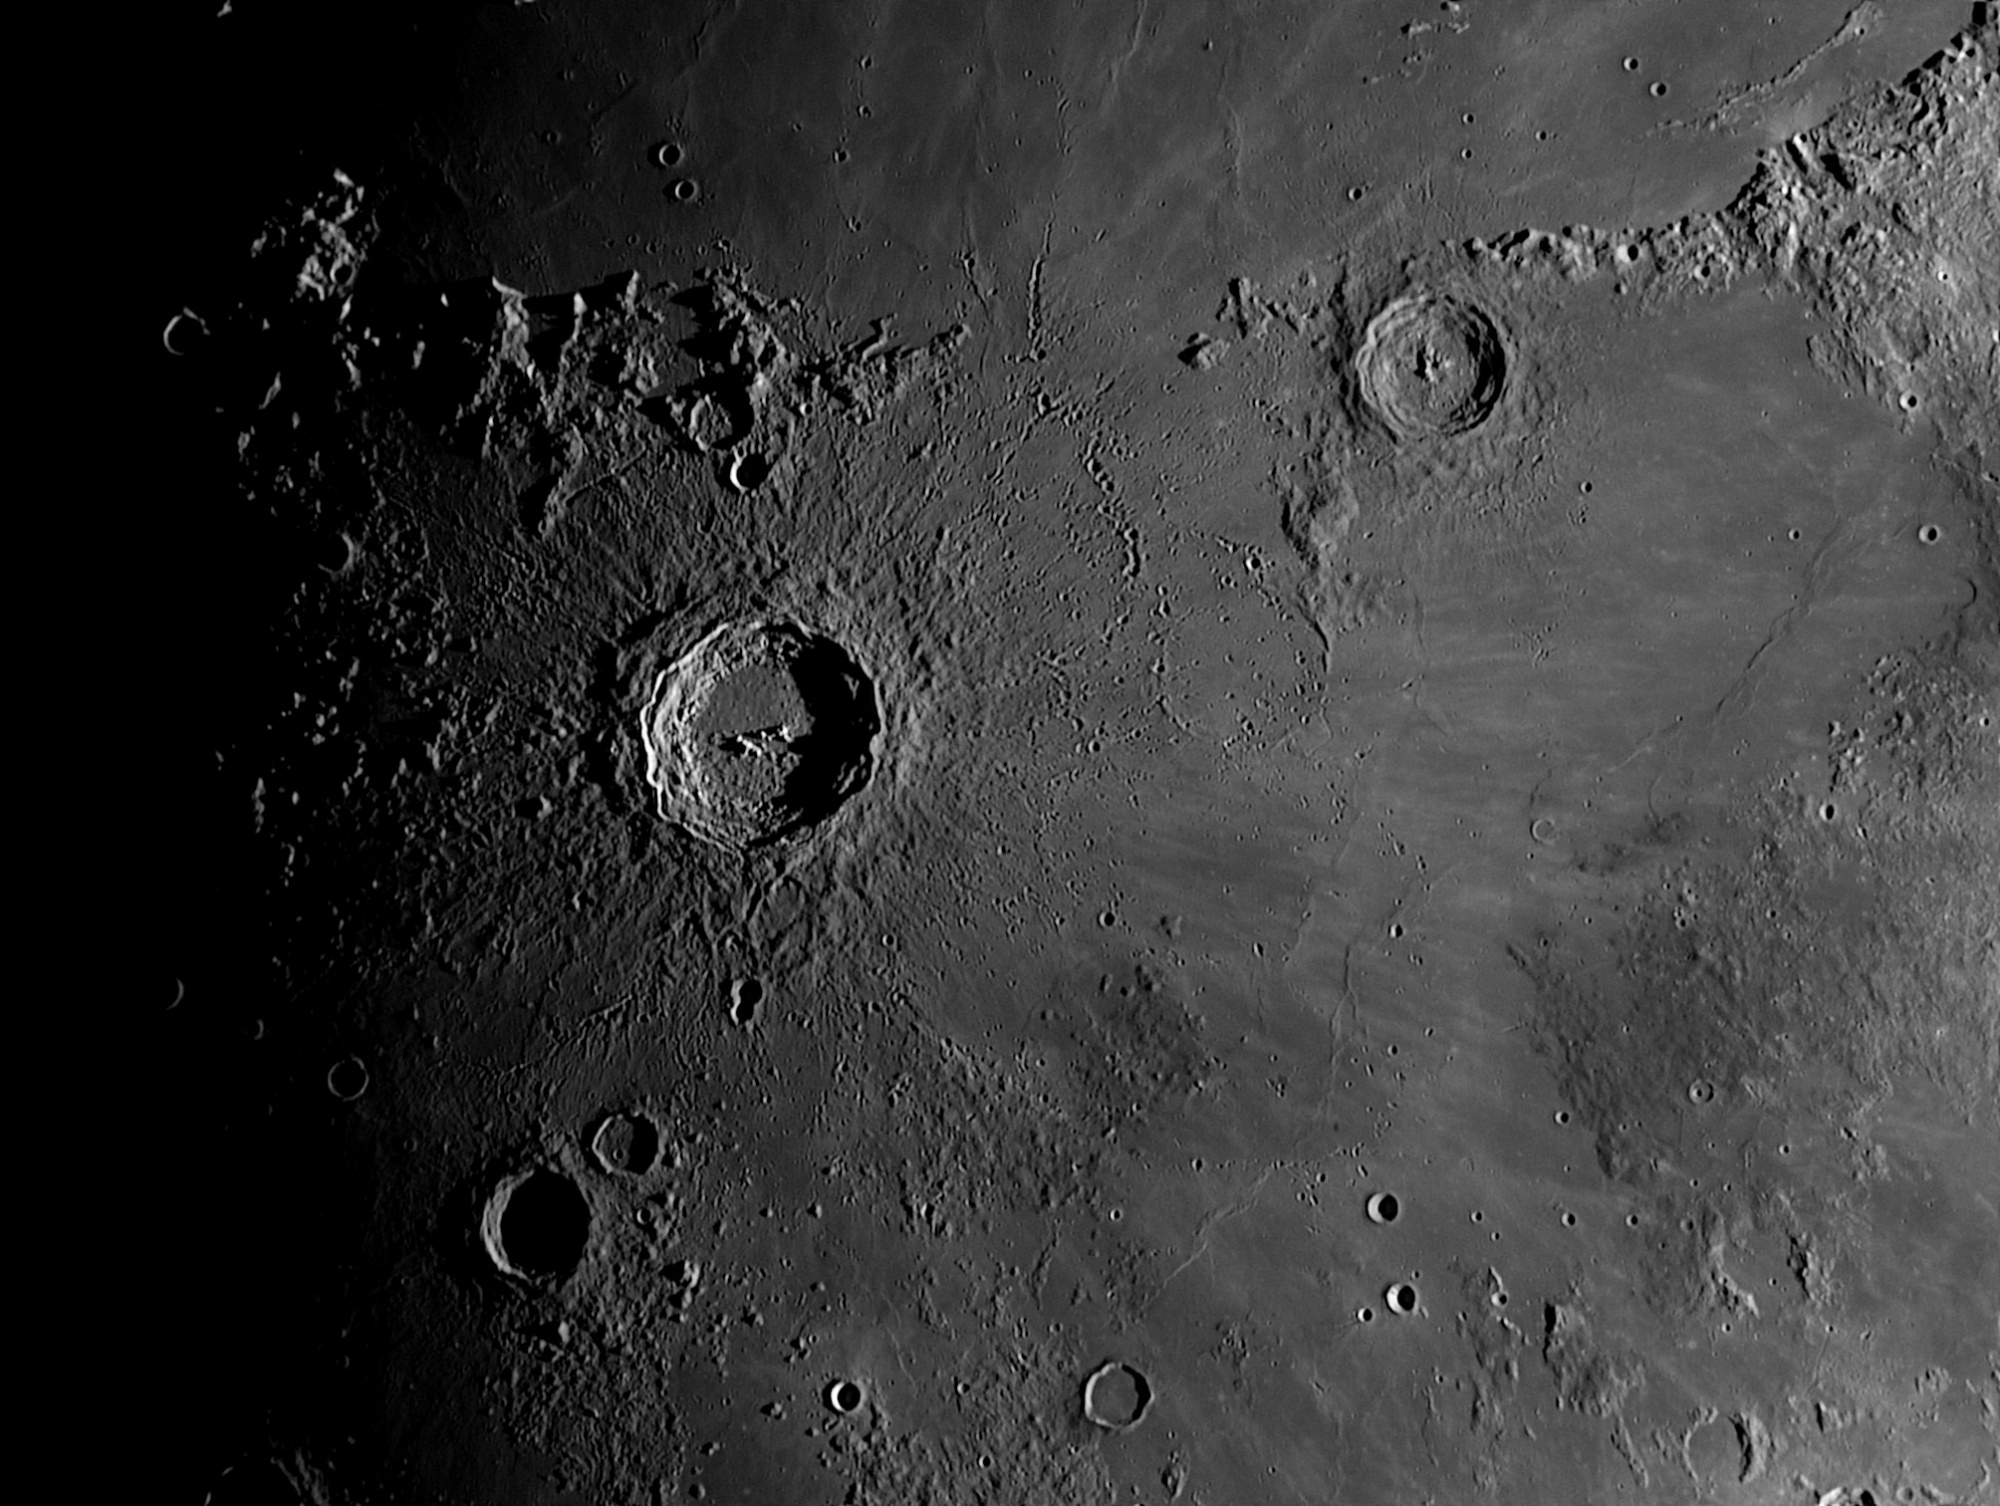 Lune-20210421_Copernic-ba-07-AS.thumb.jpg.54938bc4a74ed45db81176f5d2c7071d.jpg